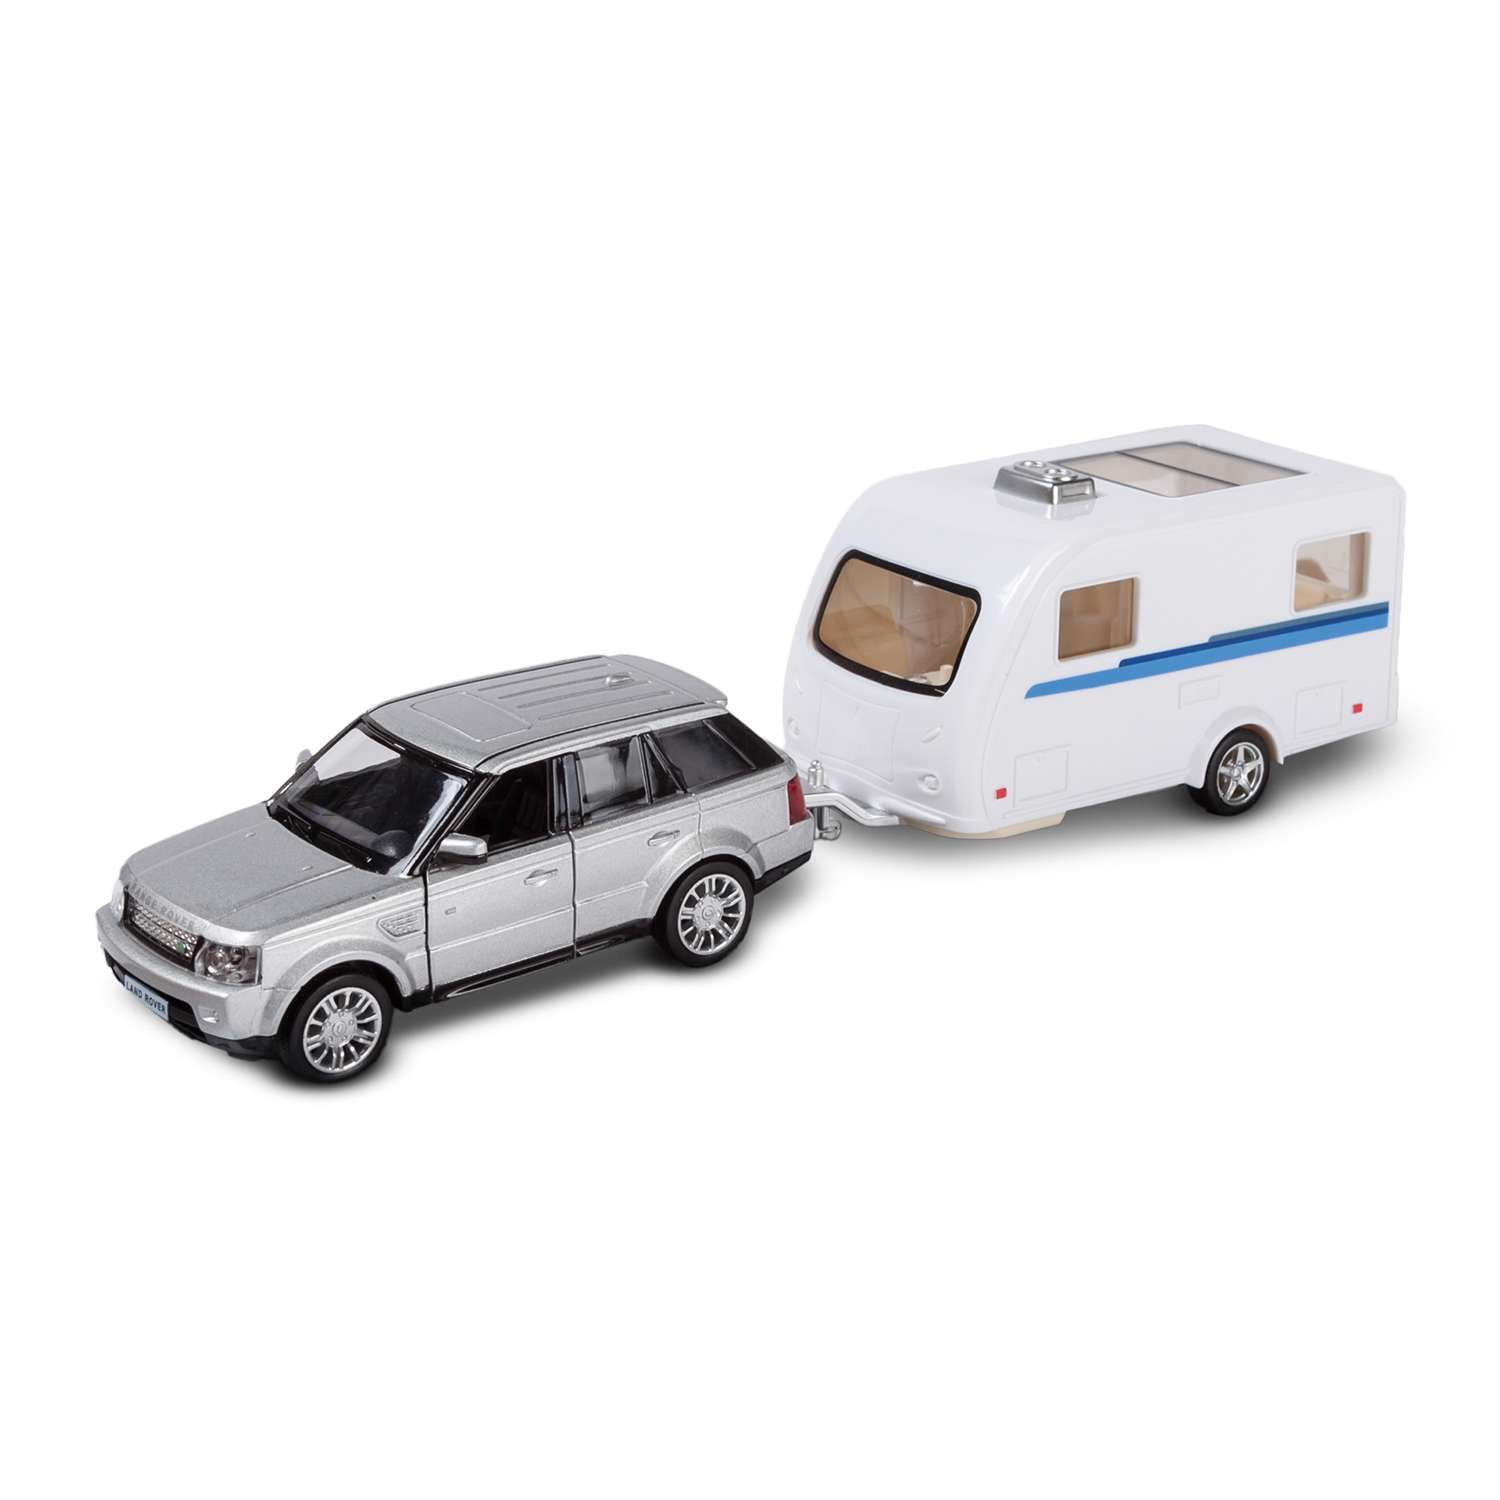 Машина с домом Mobicaro Land Rover Caravan 1:32 544007-2TG(C) - фото 1